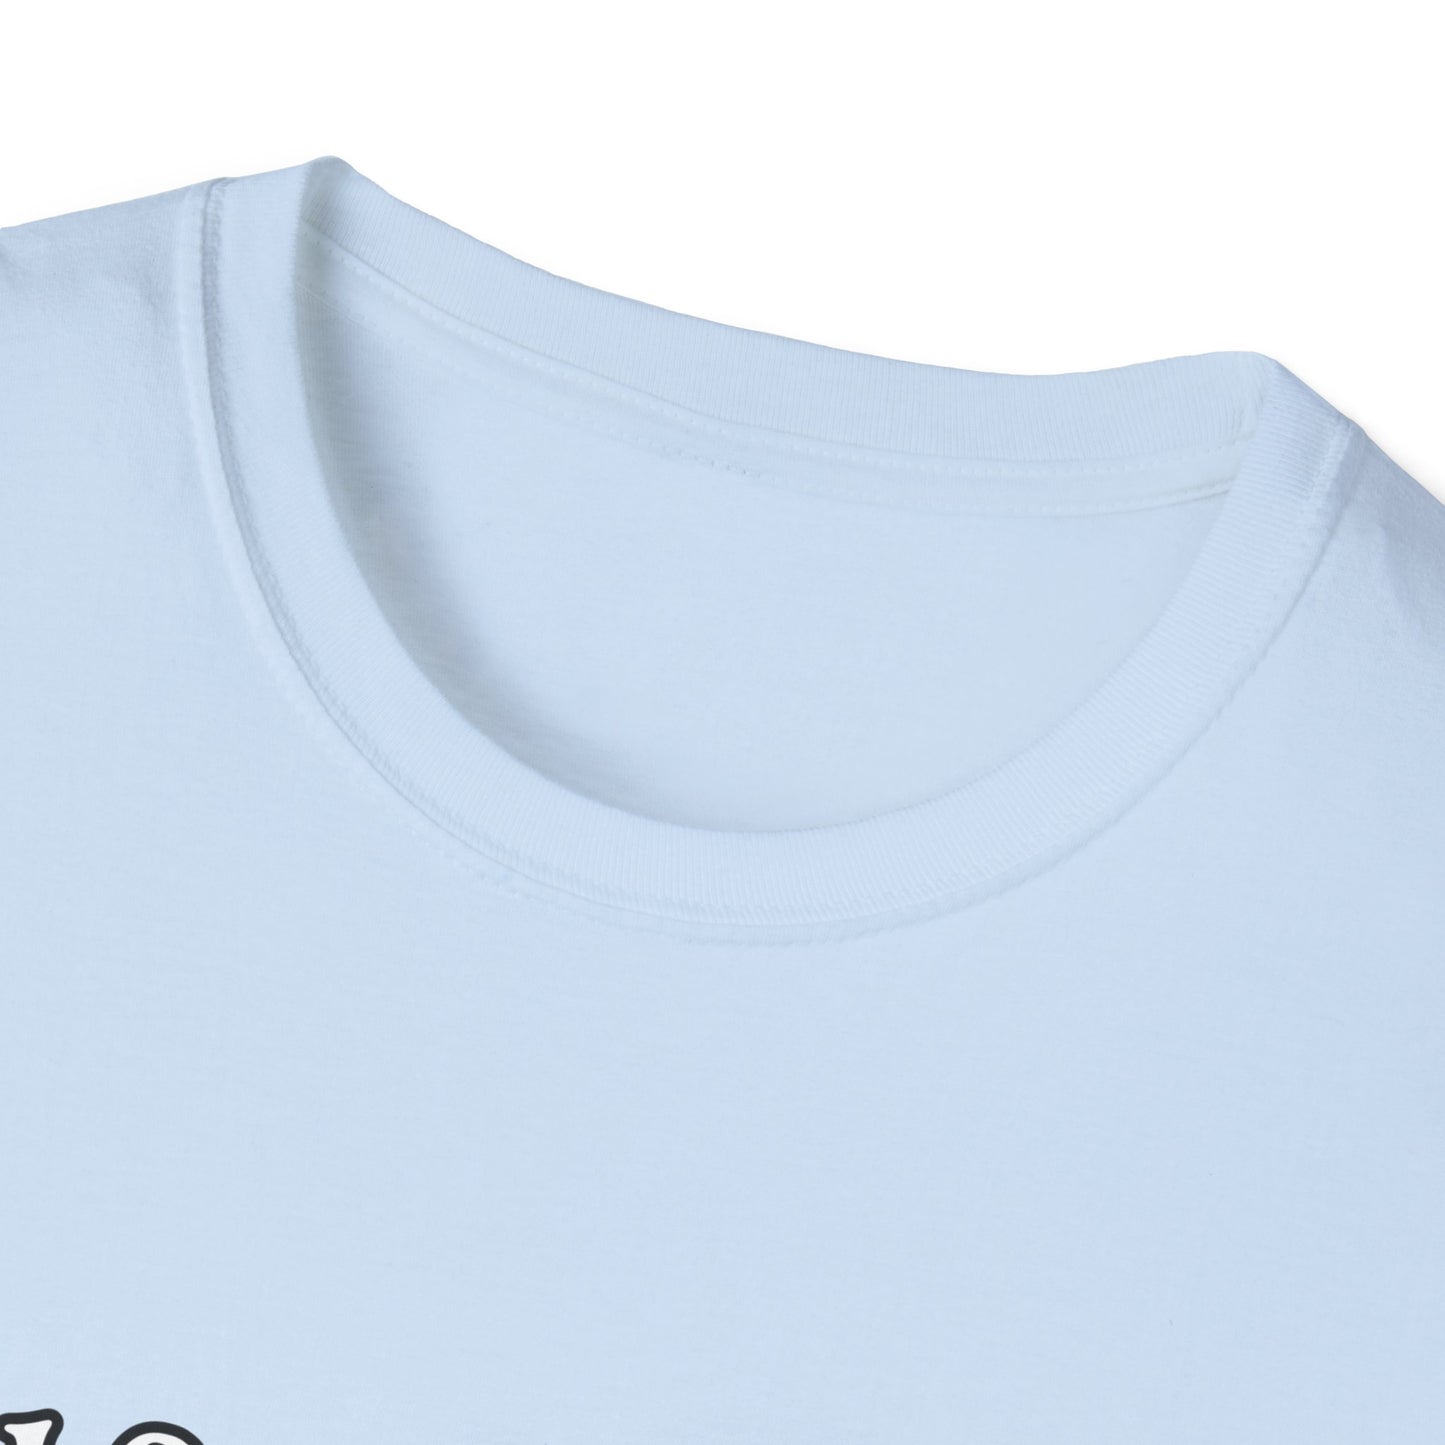 Unisex design (Self Care) T-Shirt